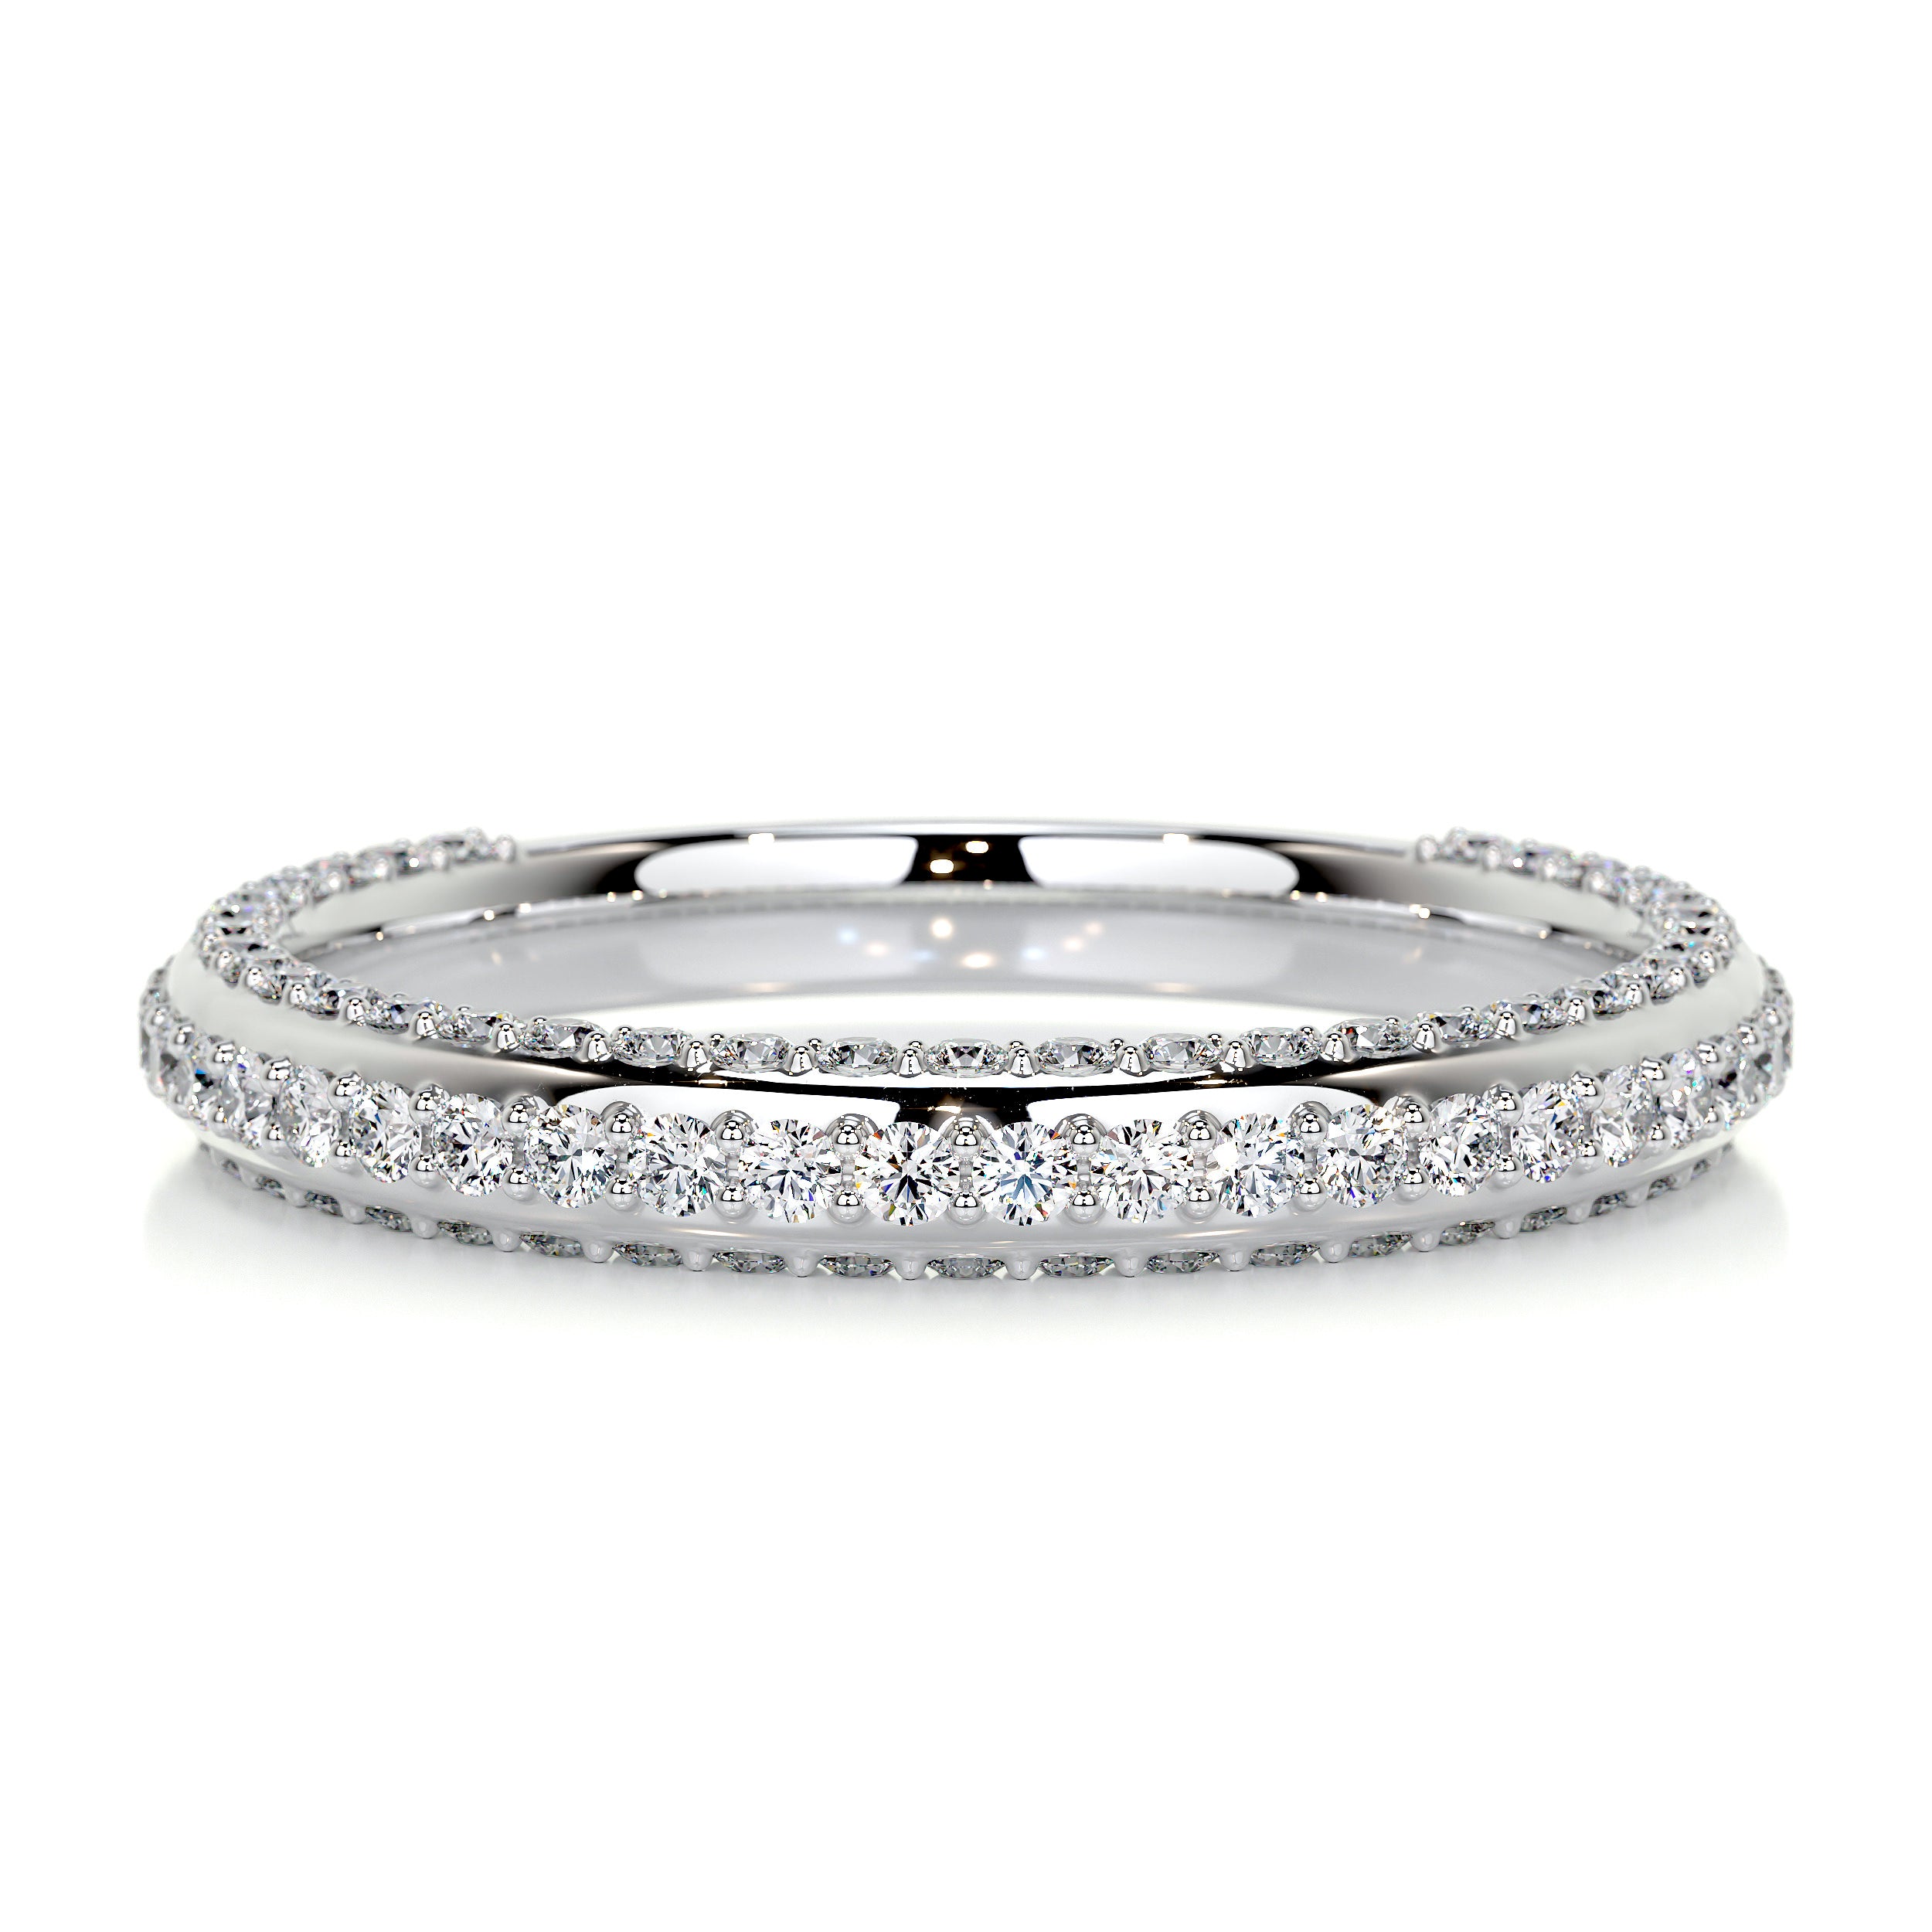 Anastasia Diamond Wedding Ring   (0.75 Carat) -18K White Gold